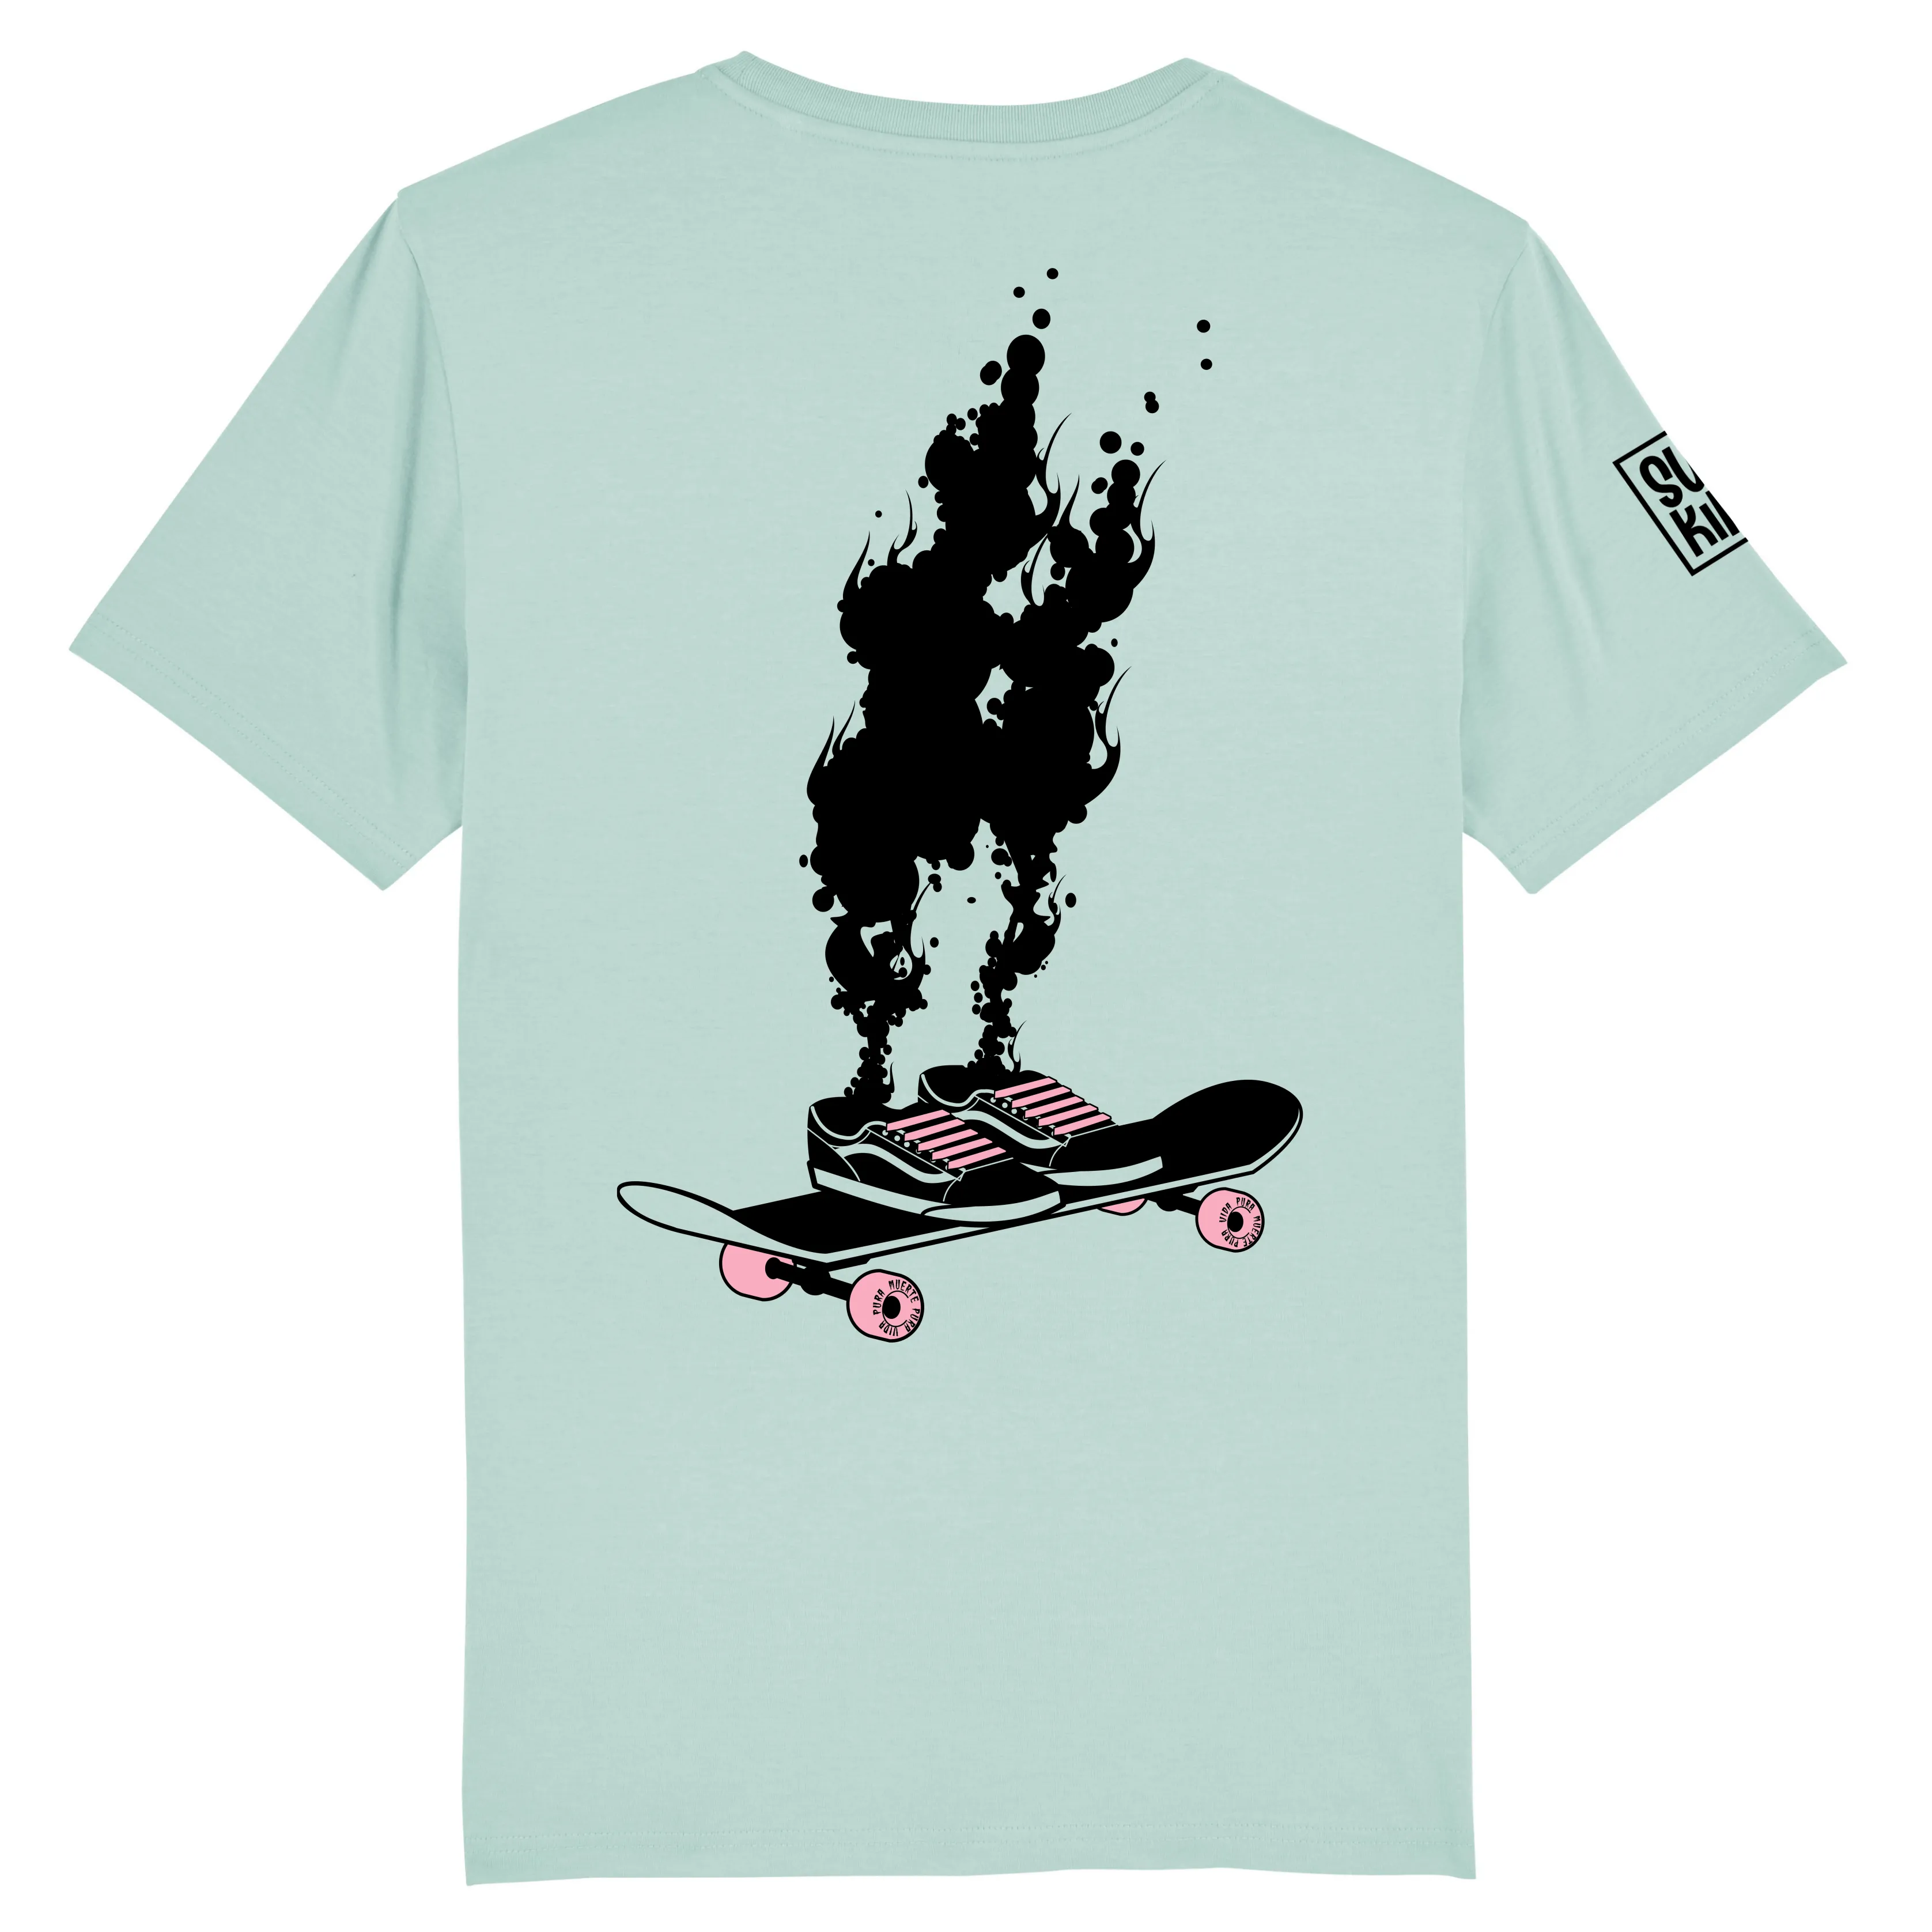  Skateboard T-shirts